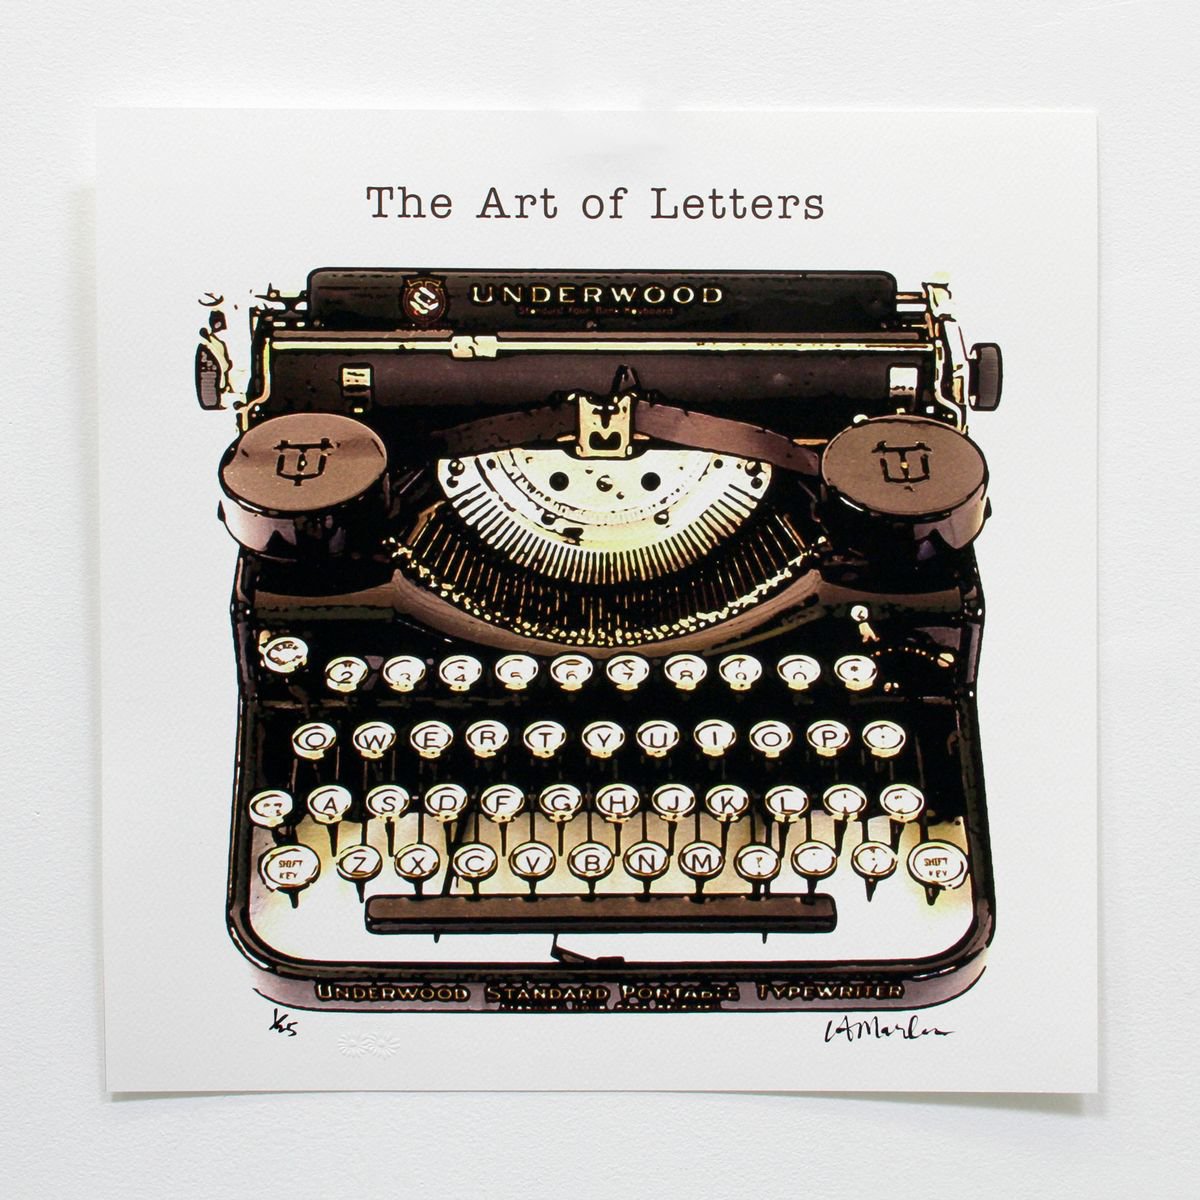 The Art of Letters - Original Vintage Typewriter Art by LA Marler by LA Marler